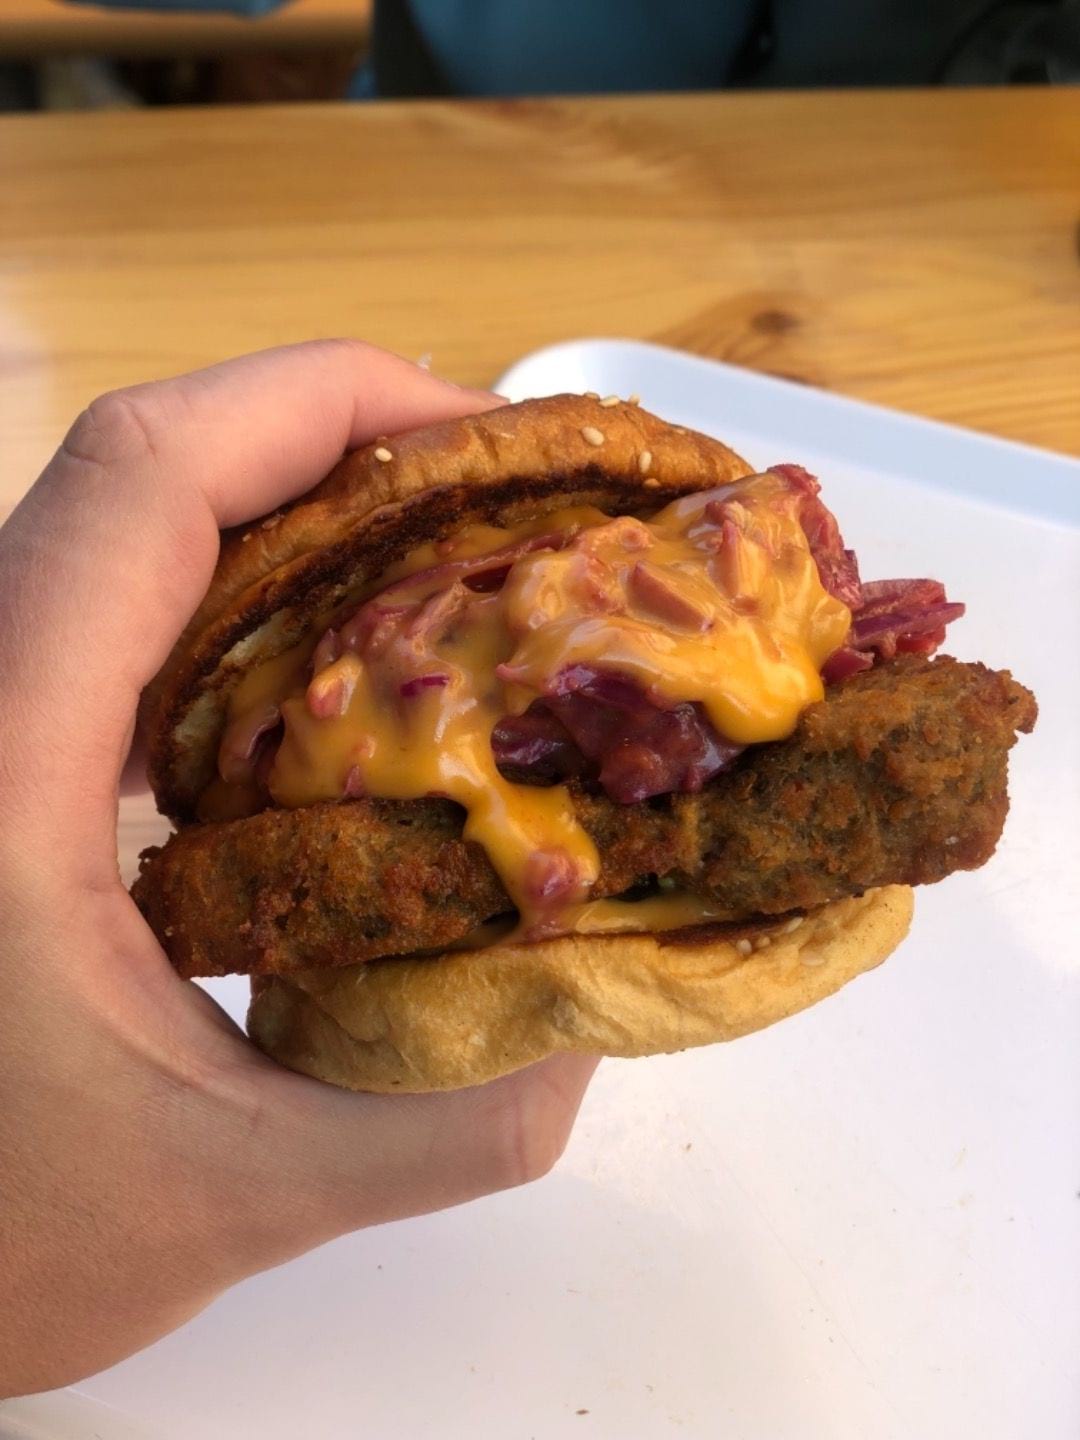 Dirty chick’n burger – Photo from Dirty Vegan by Fredrik J. (07/06/2019)